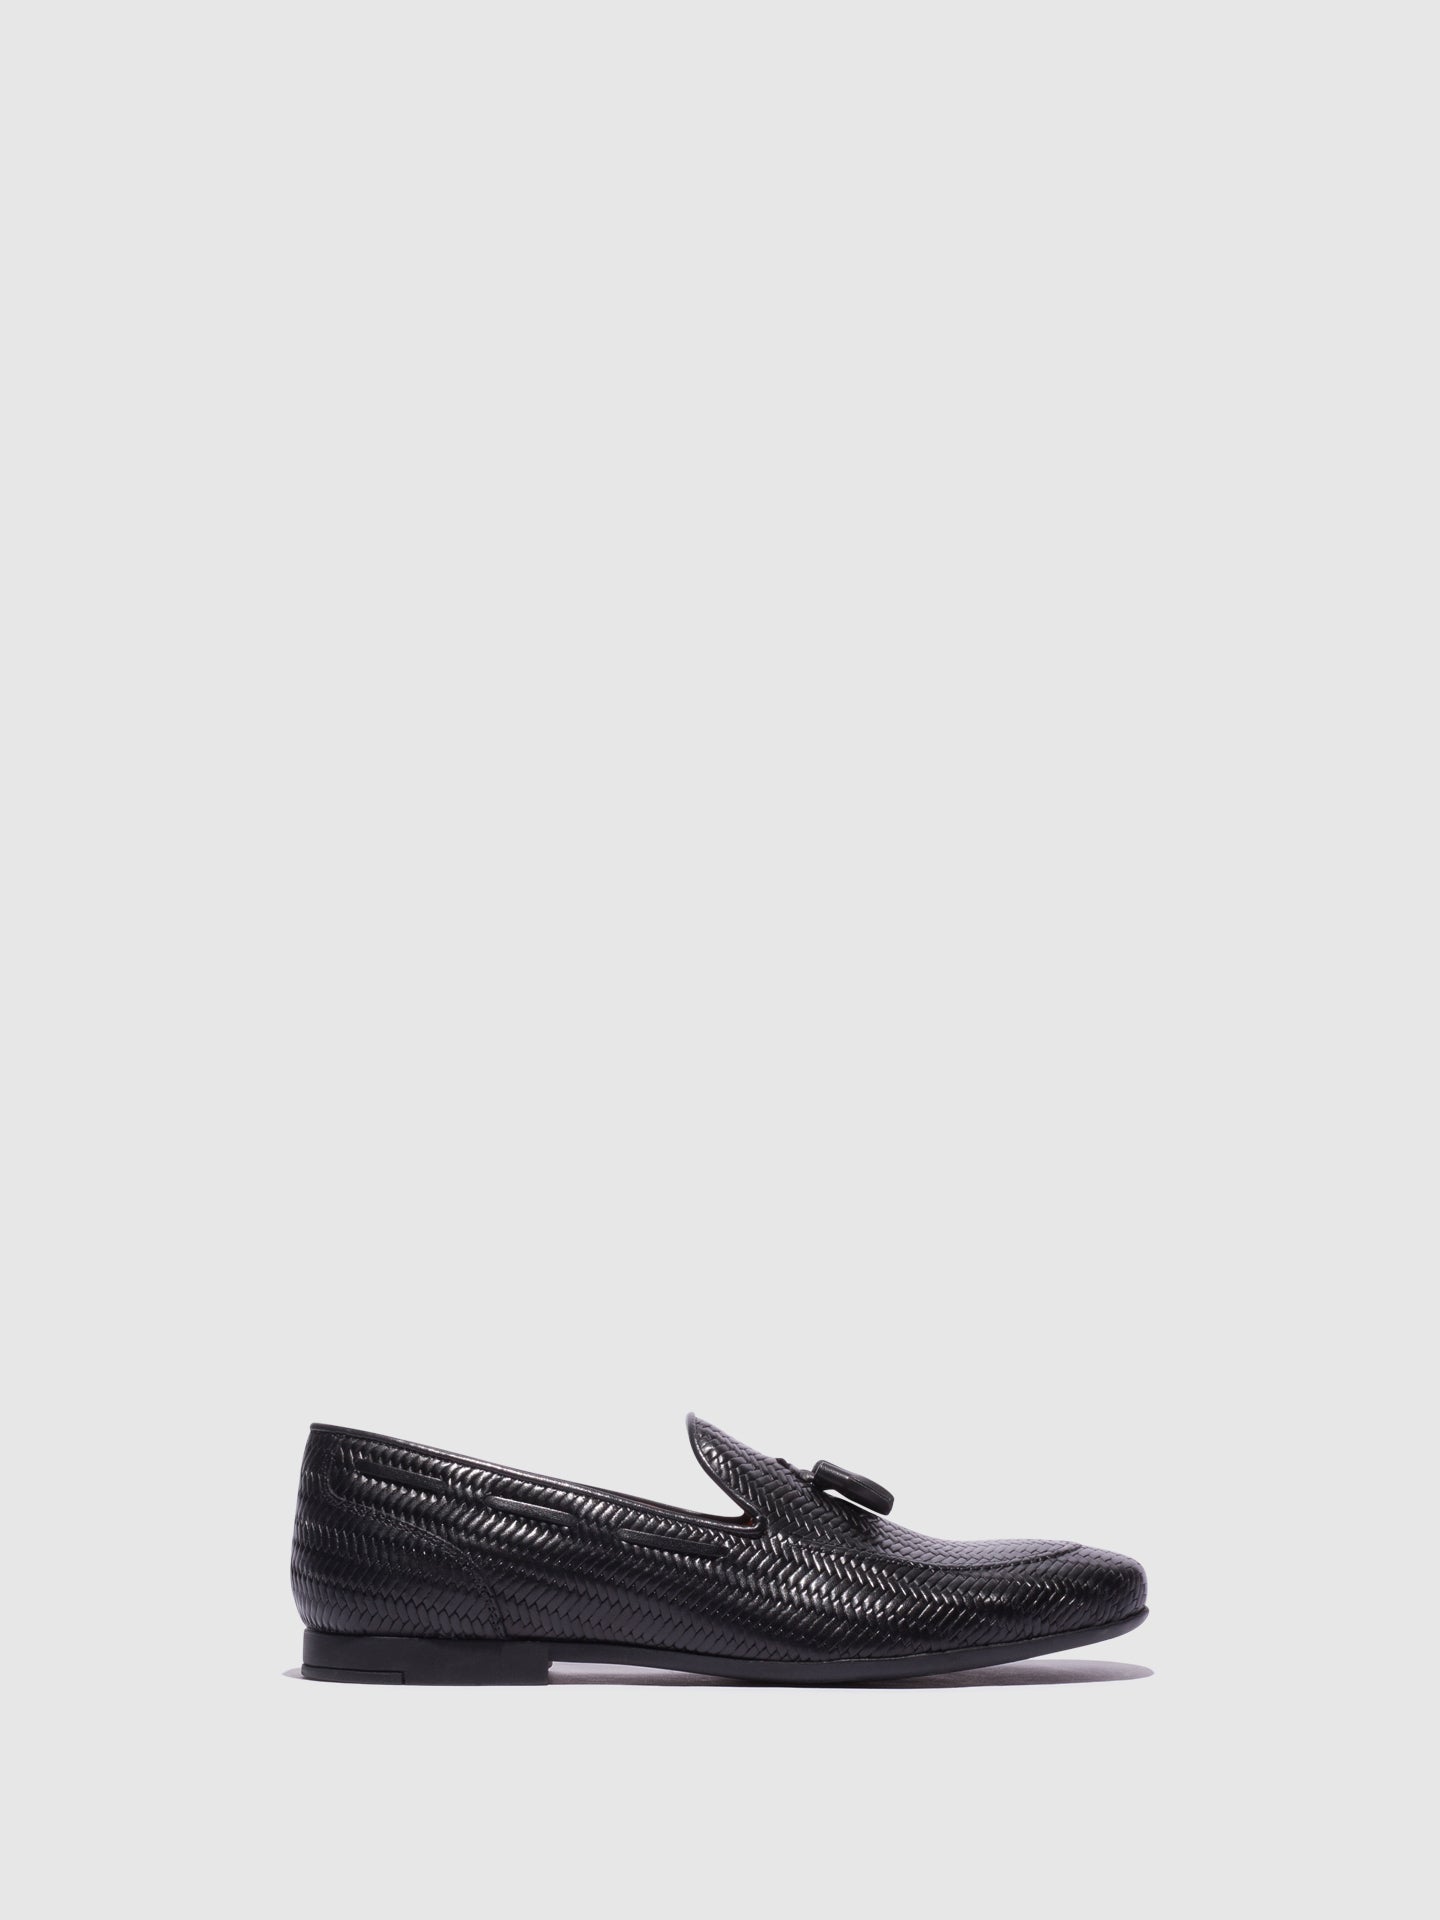 Foreva Black Tassel Loafers